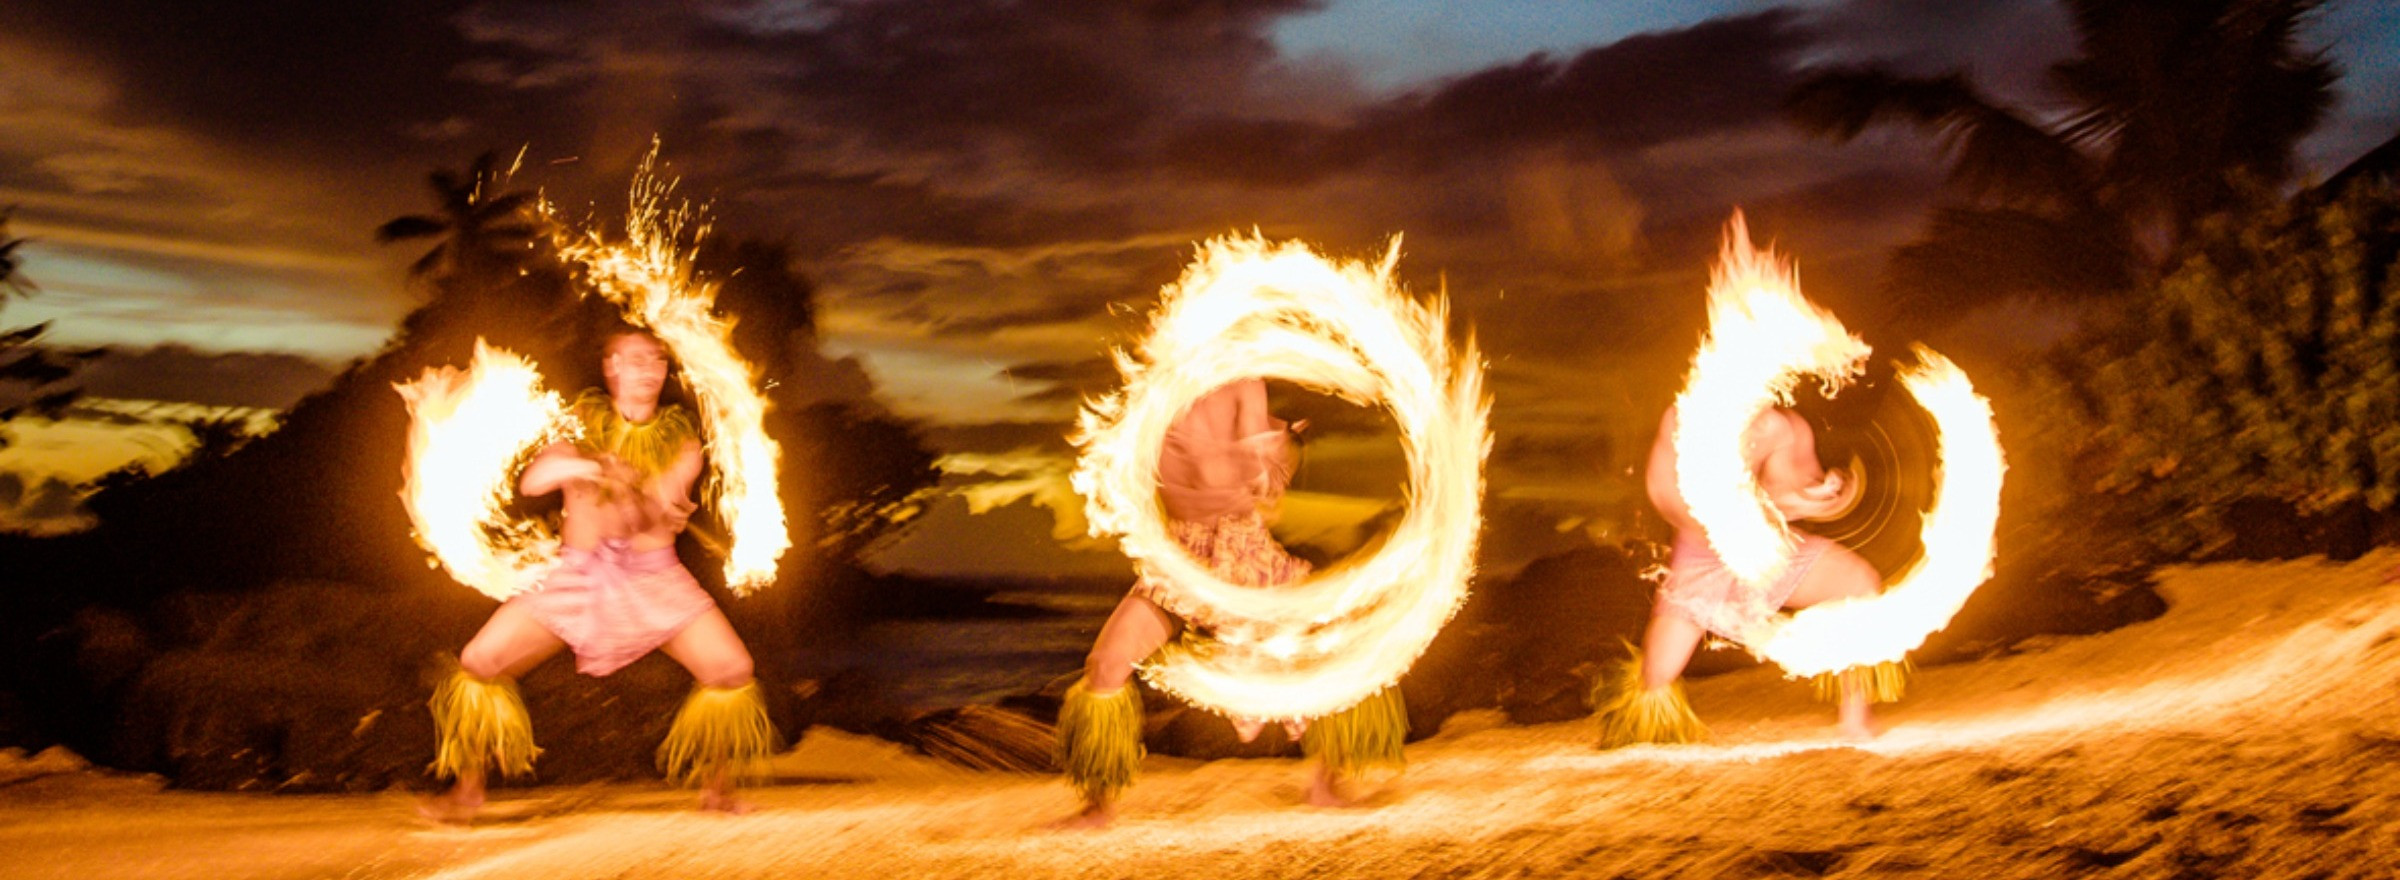 fire dancing samoa